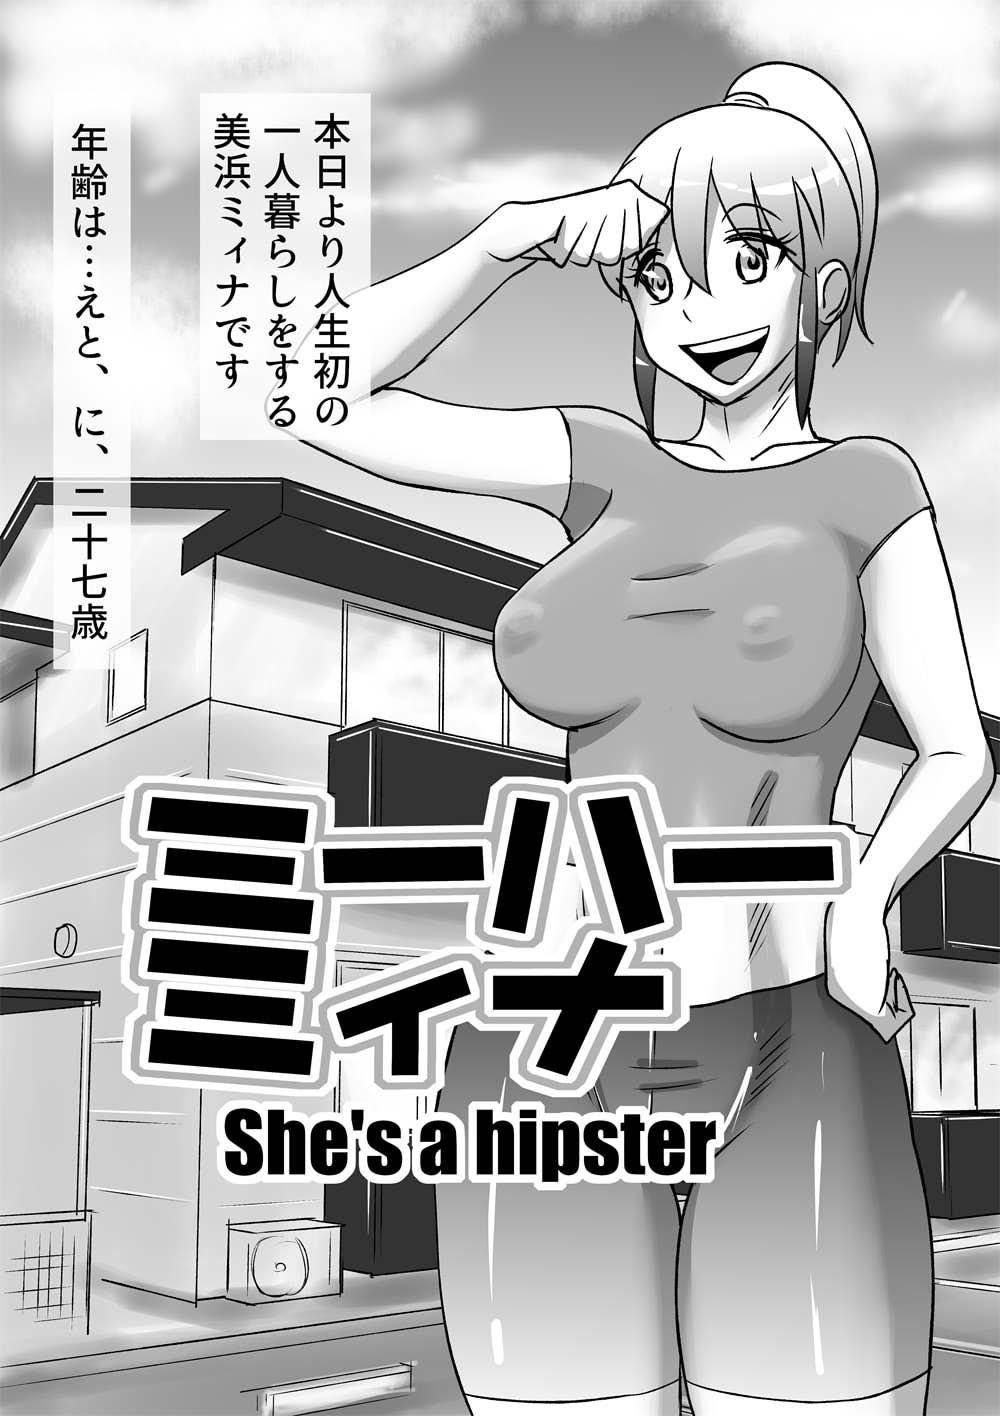 Miihaa Mina - She's a hipster 0